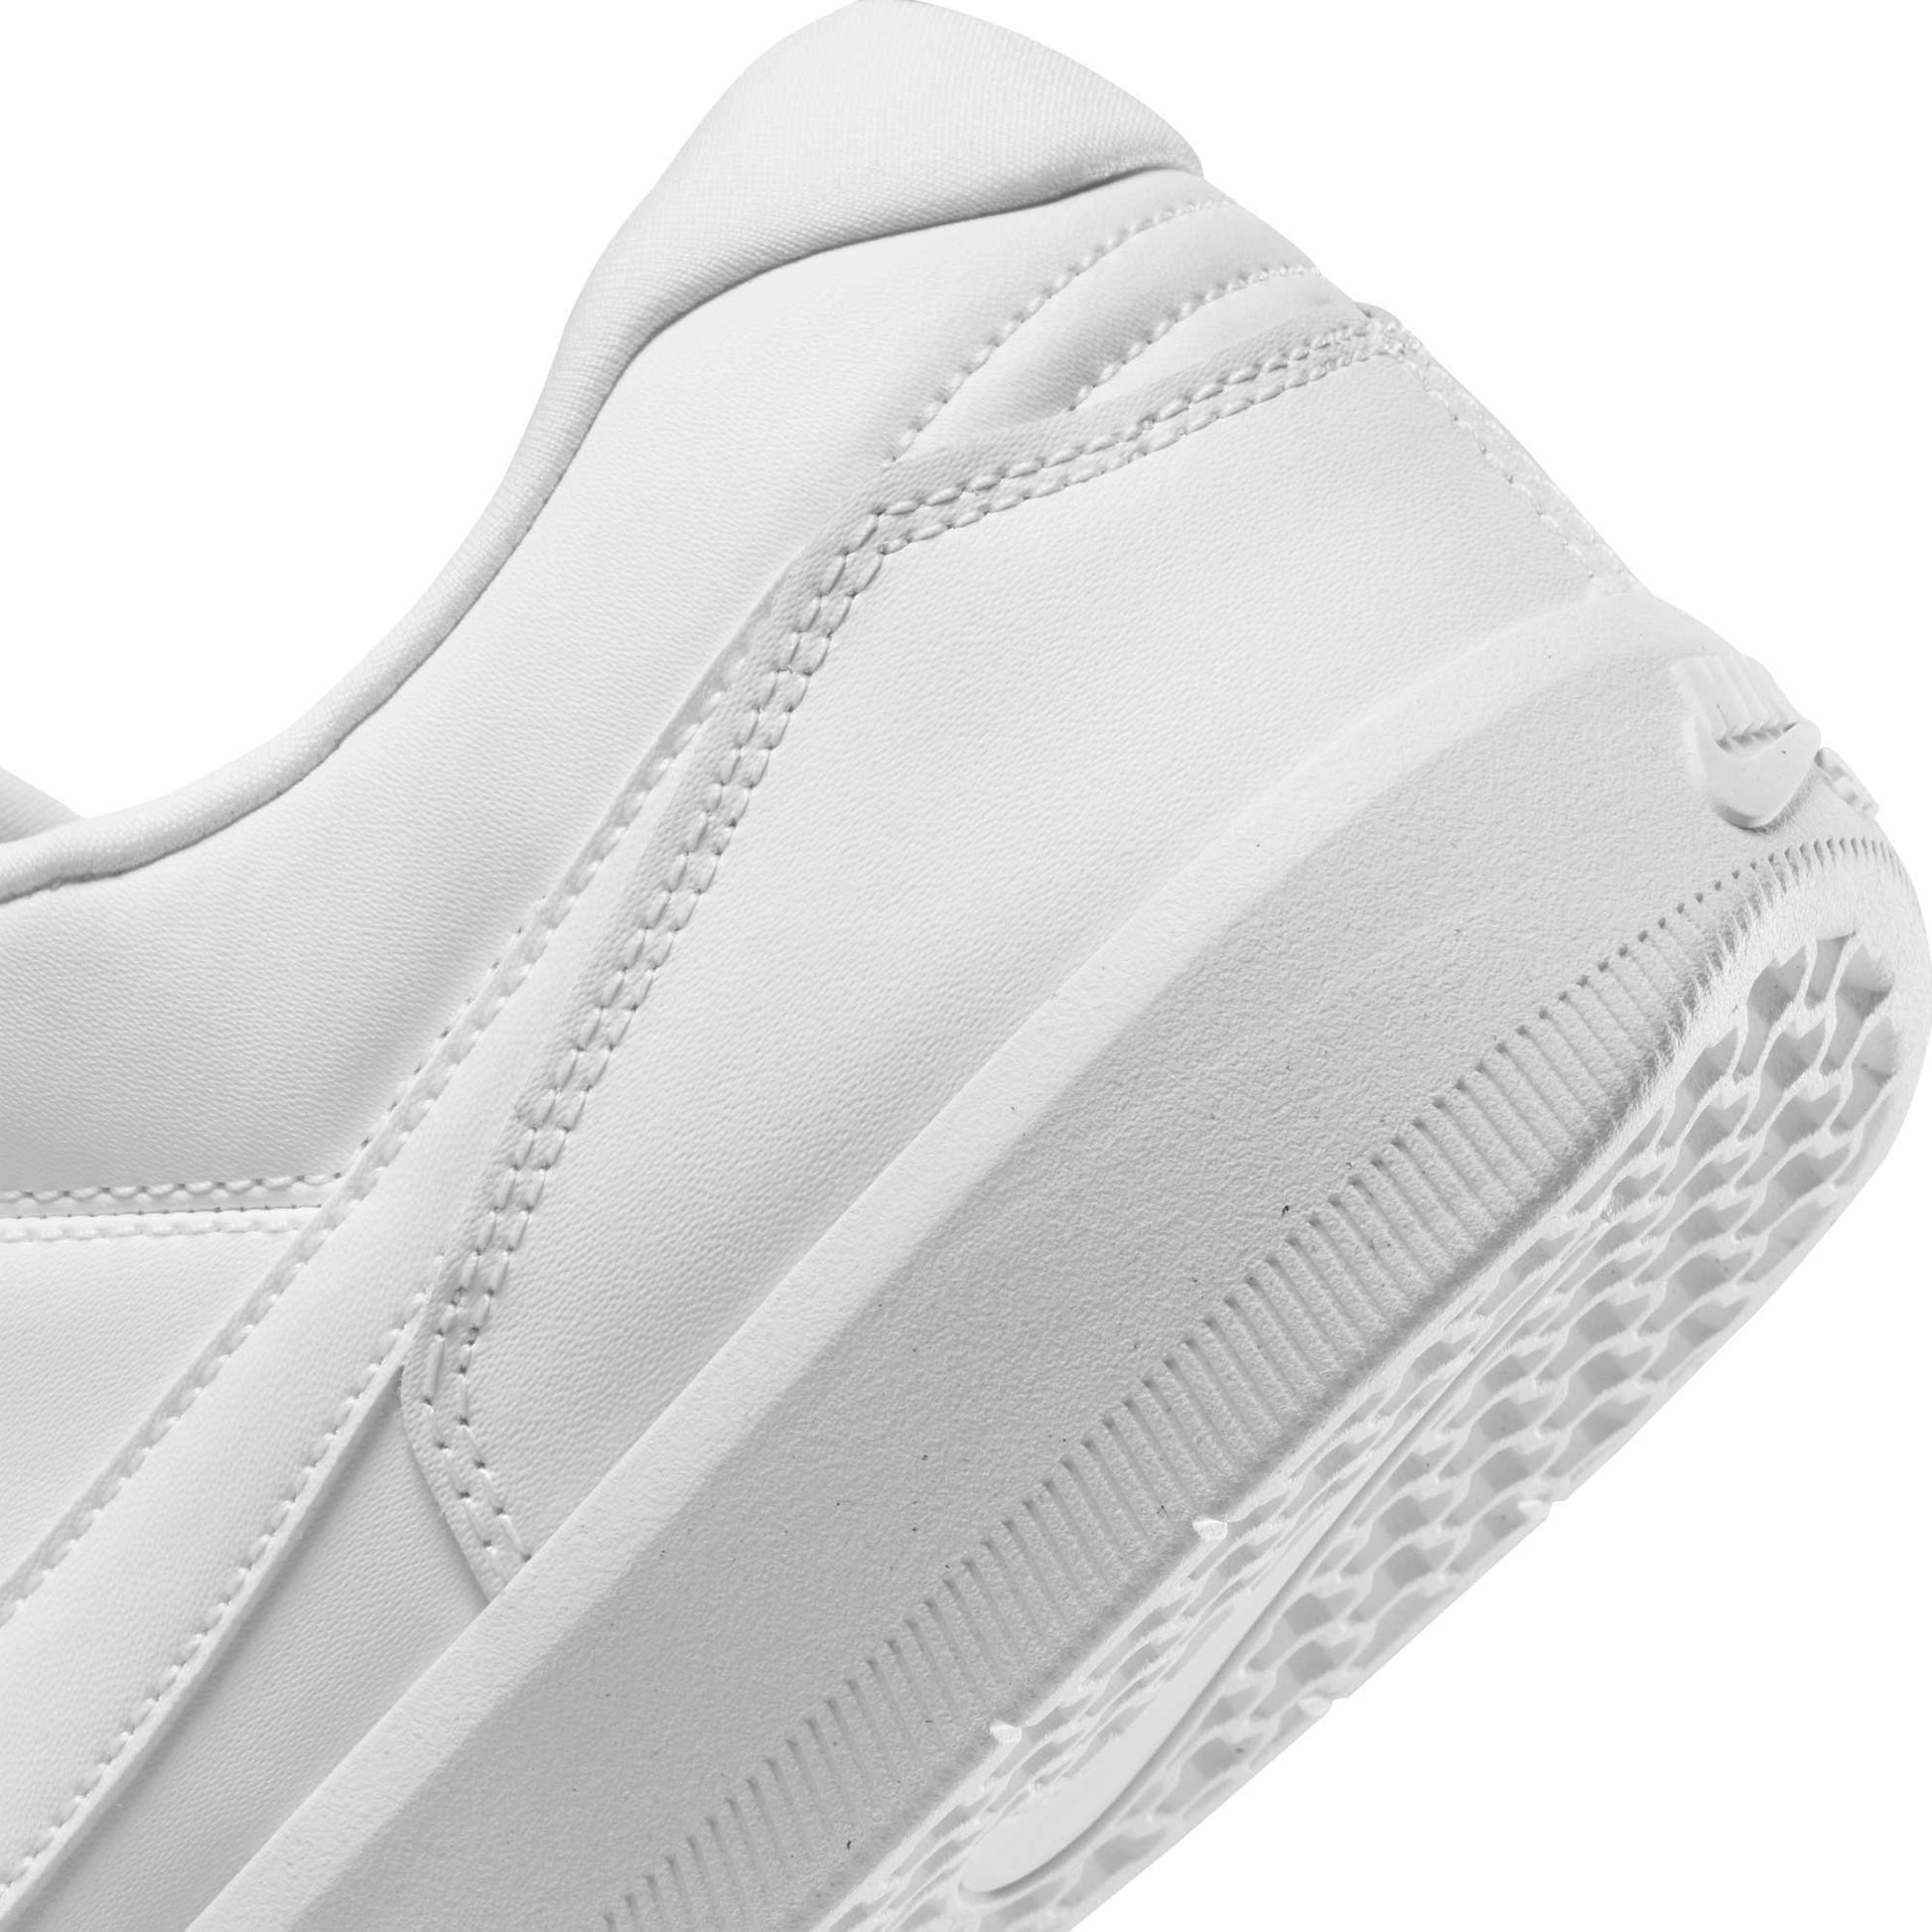 Nike SB Force 58 Premium, white/white-white-white - Tiki Room Skateboards - 10